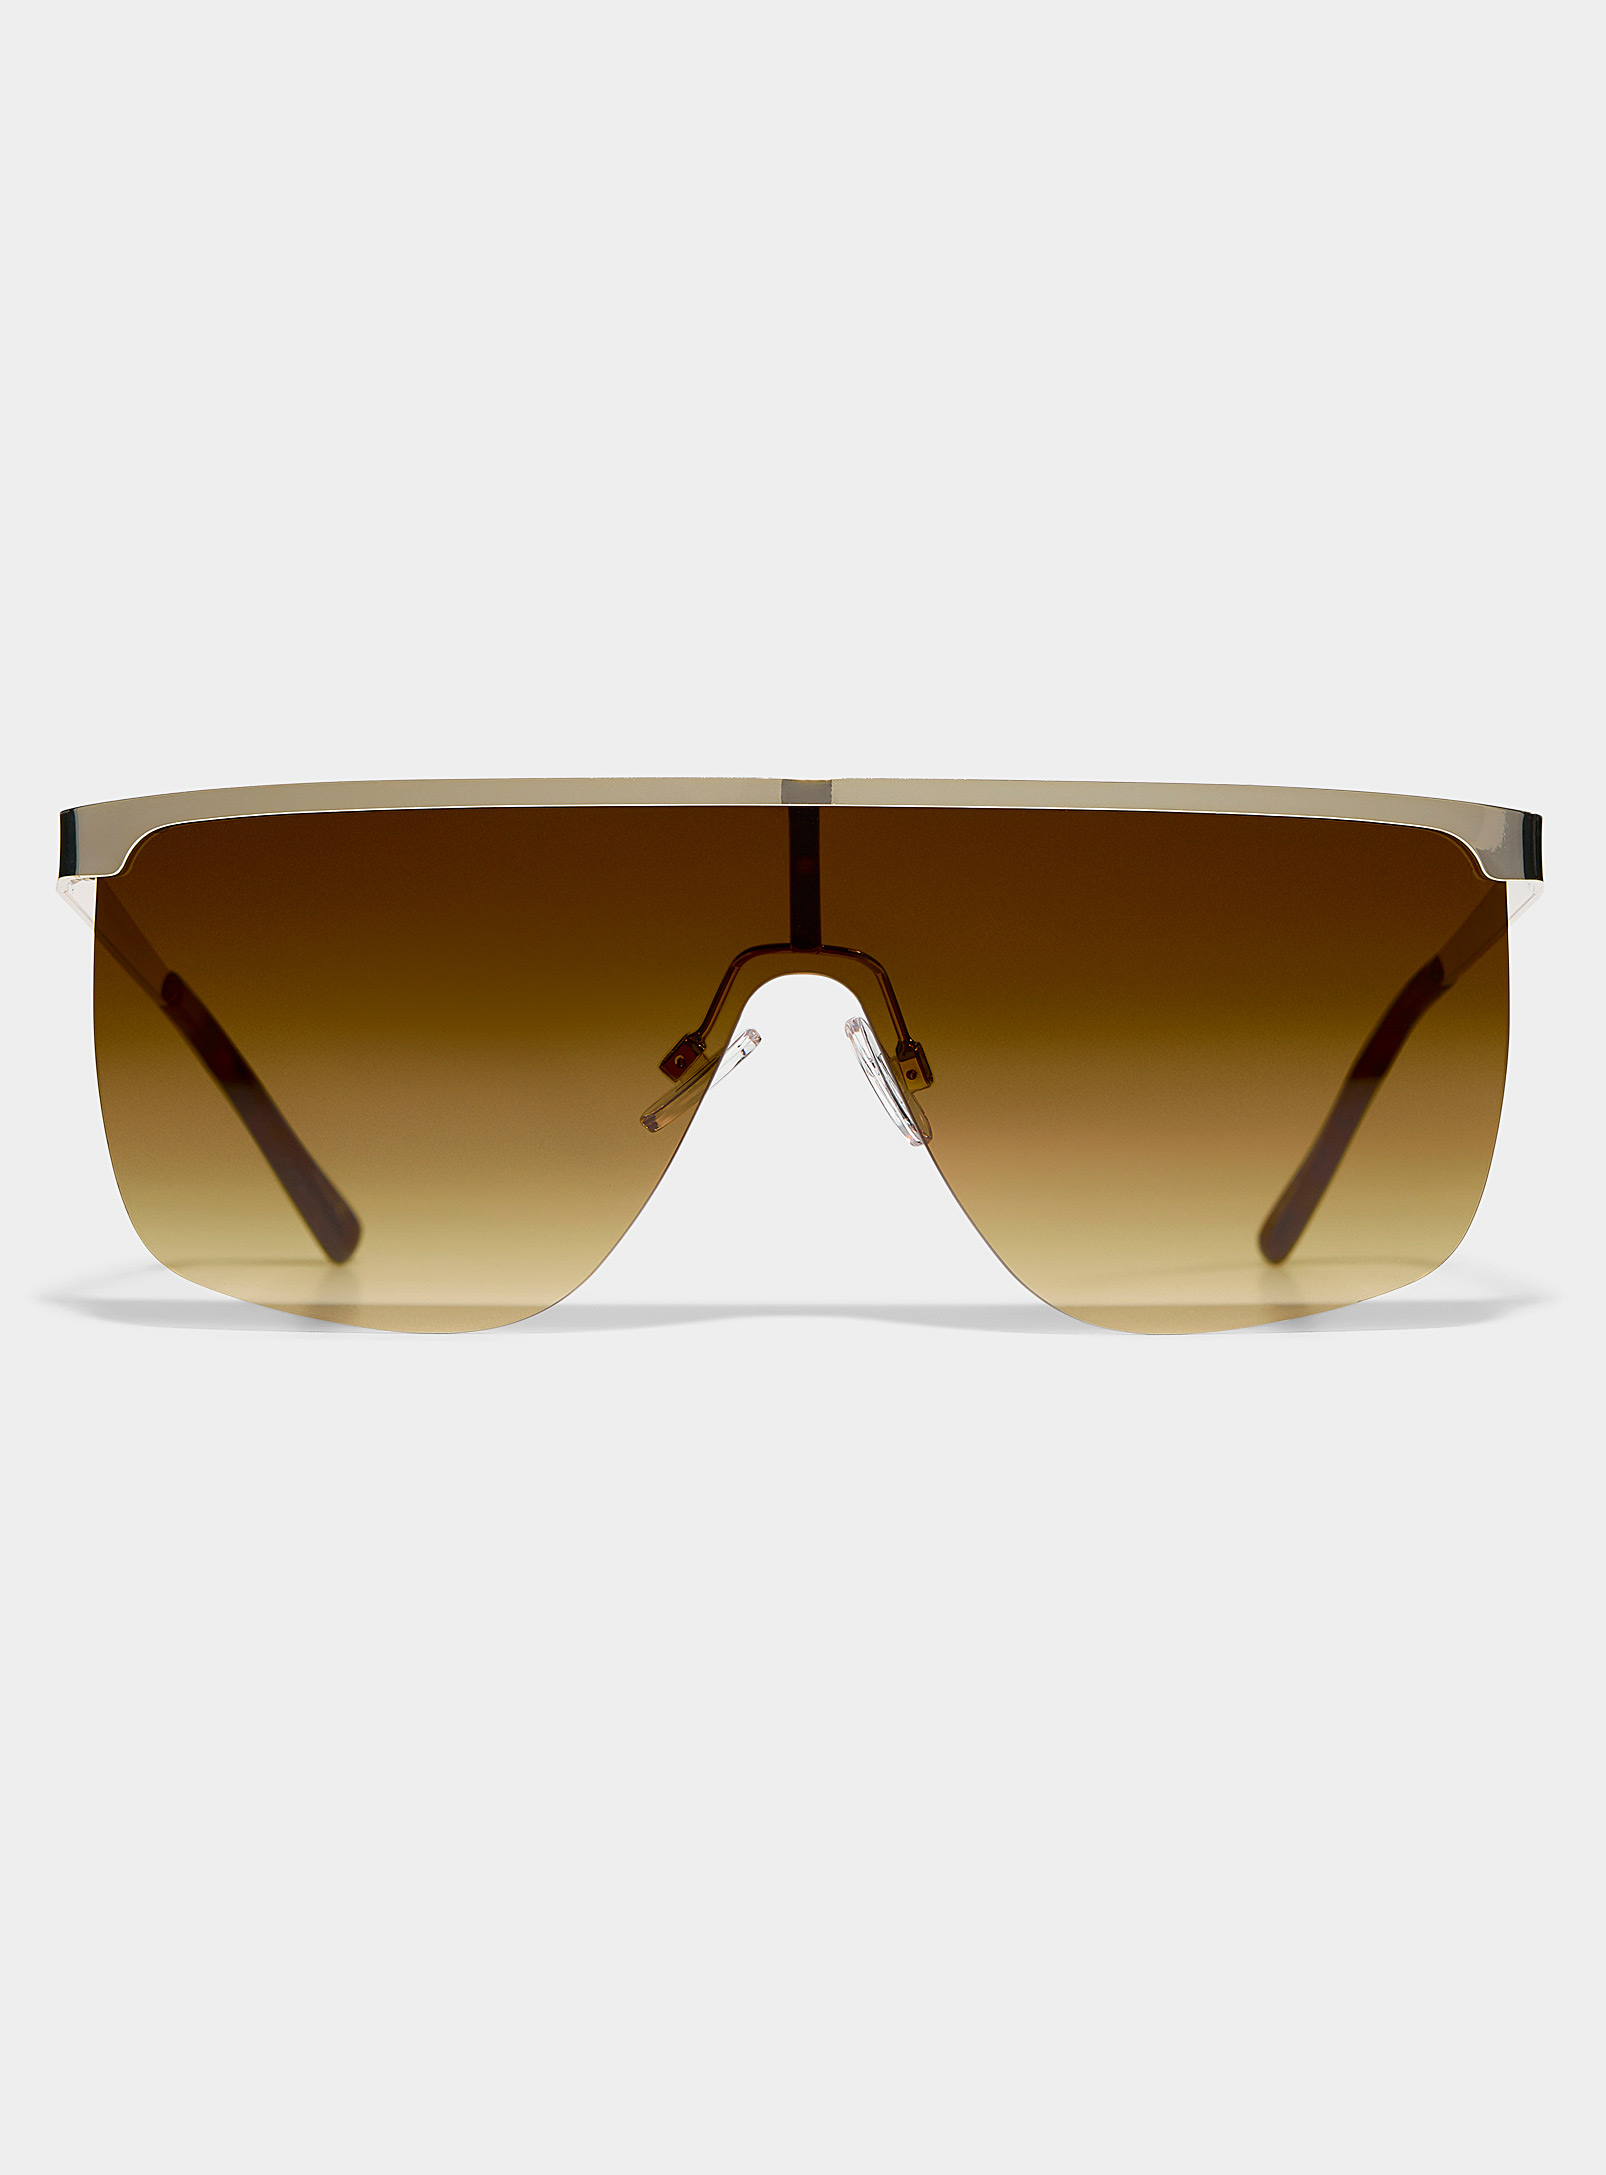 Simons - Women's Trinity visor sunglasses